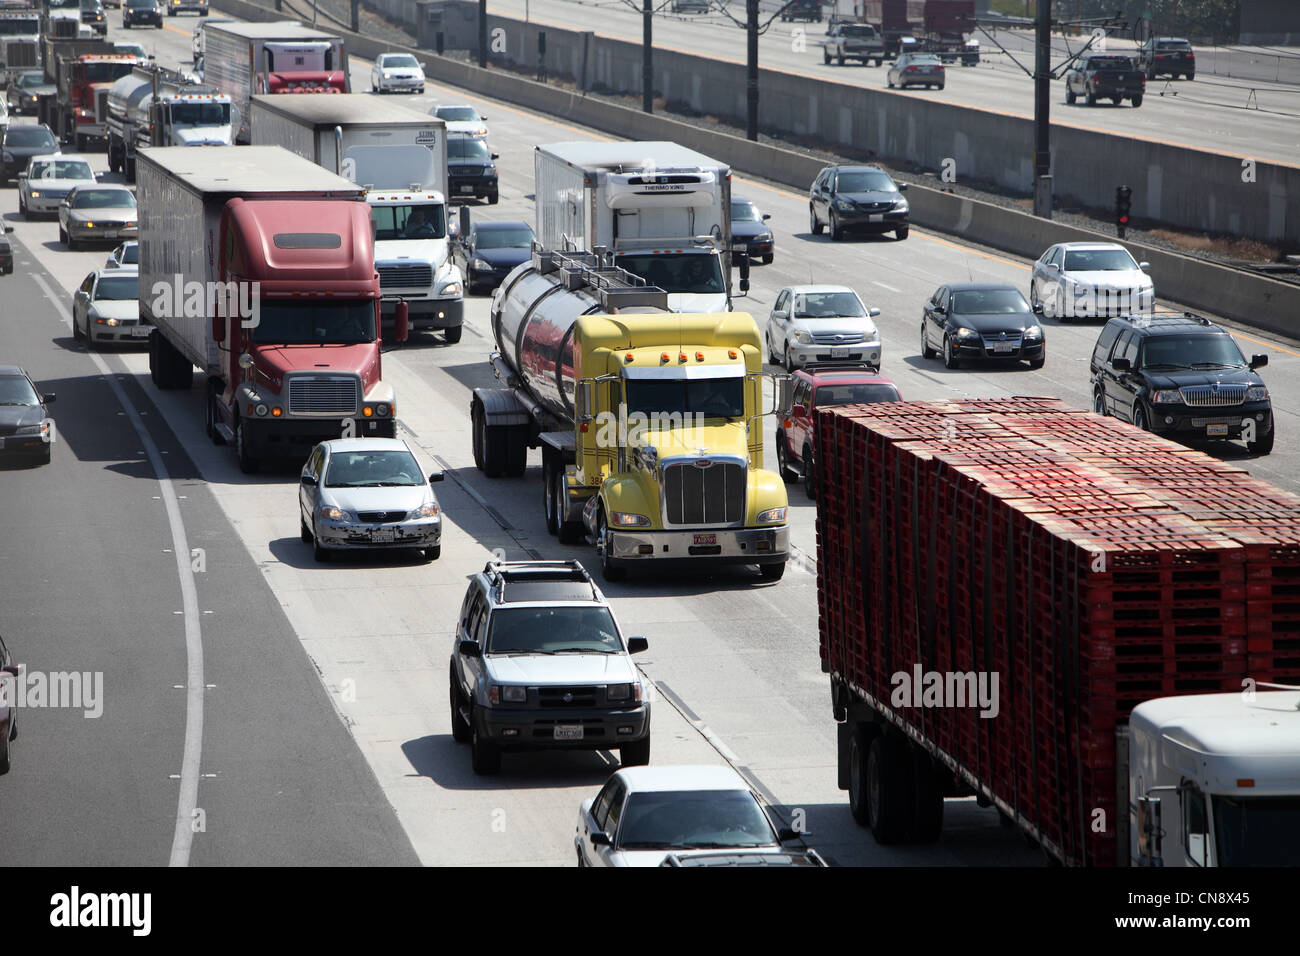 PASADENA, CA, USA - 10. April 2012 - schwere Lkw-Verkehr Reisen West auf der 210 Autobahn in Pasadena, CA am 10. April 2012. Stockfoto